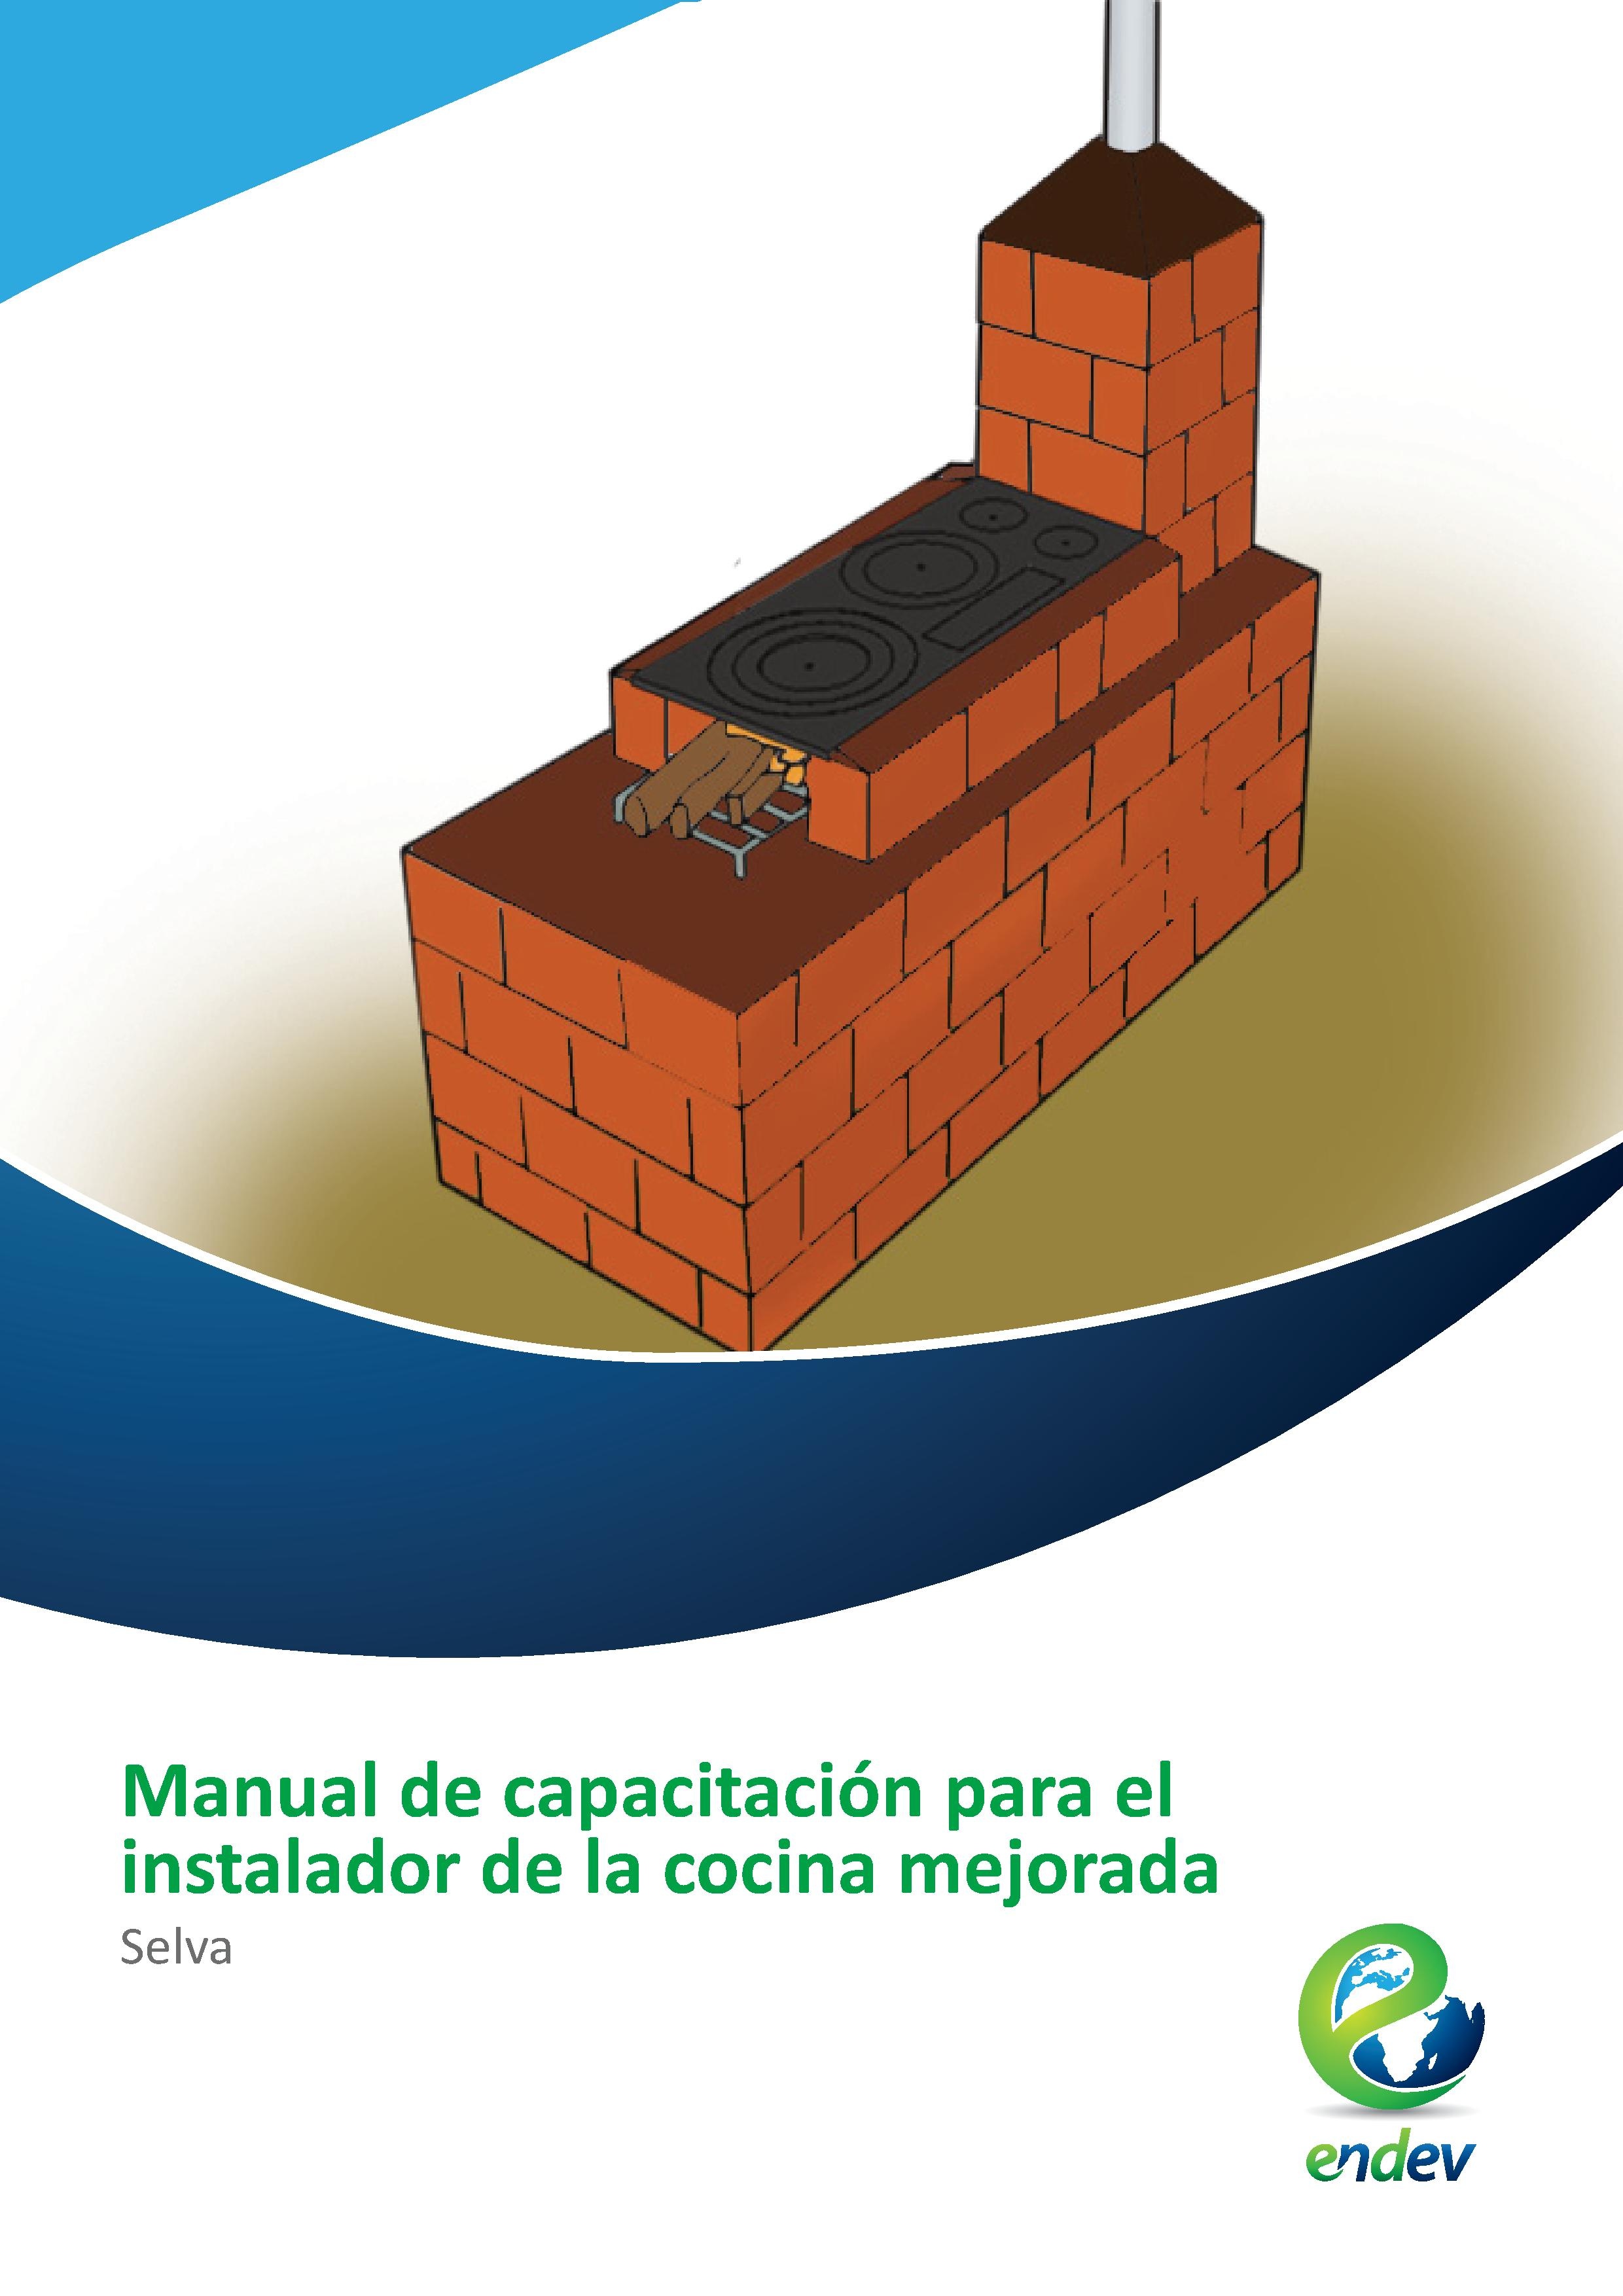 Manual de capacitación para el instalador de la cocina mejorada Selva